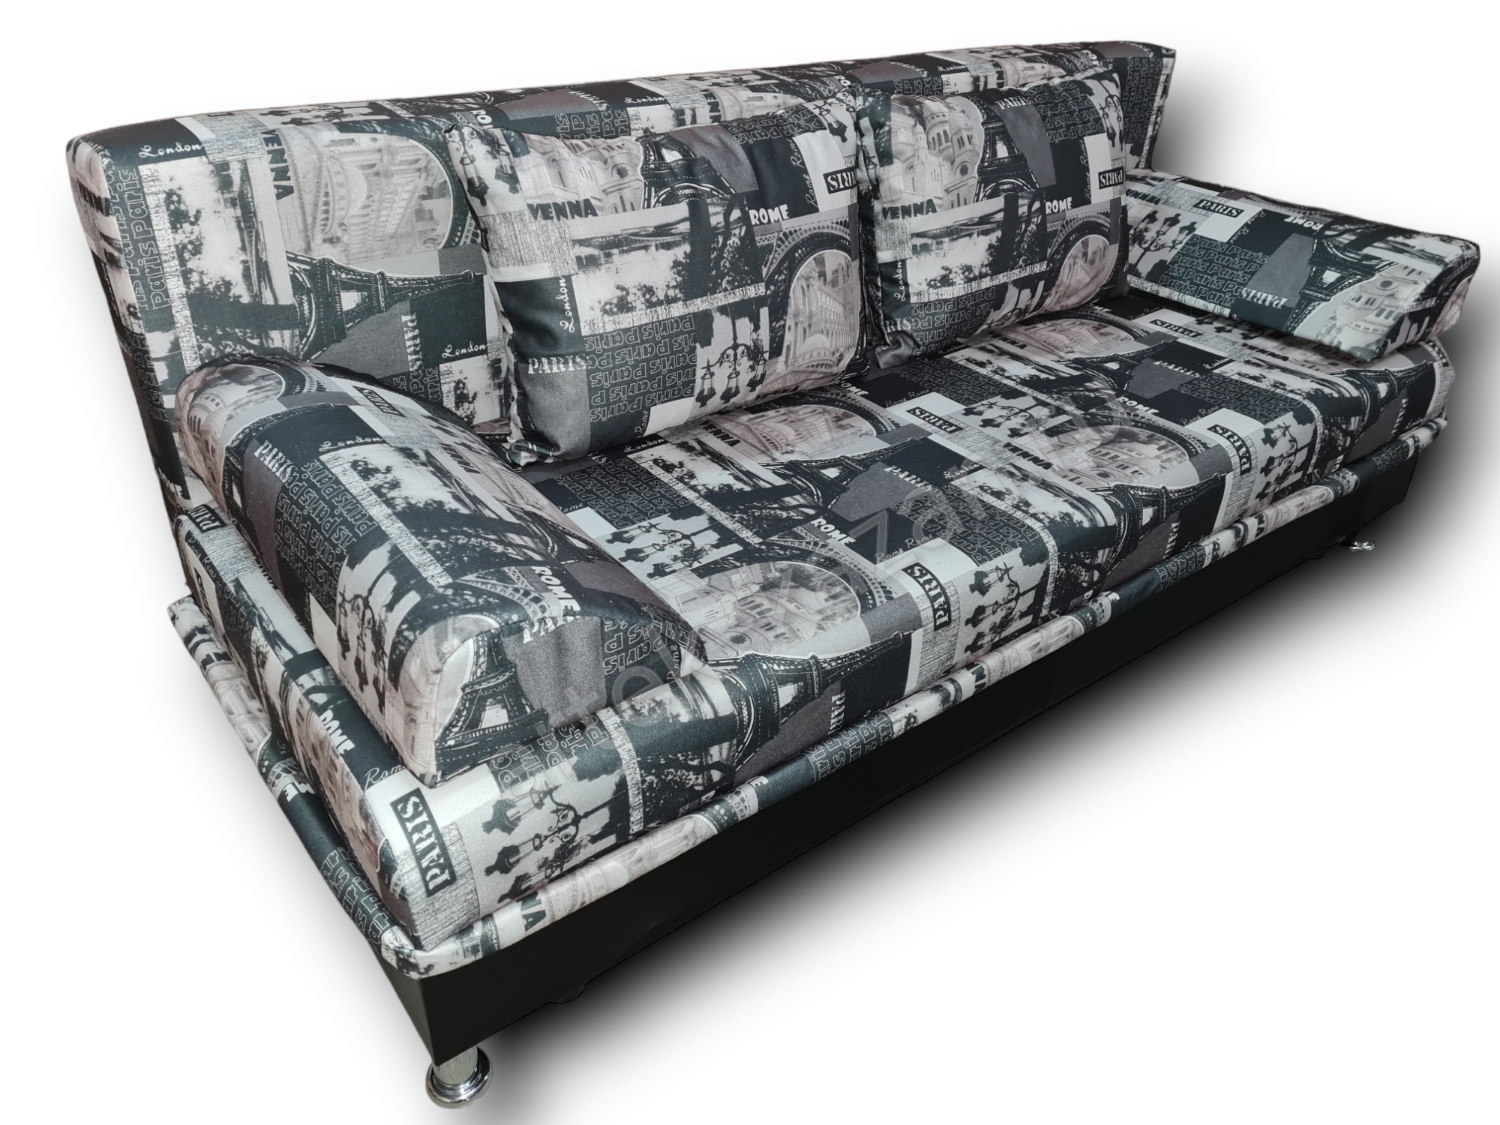 диван еврокнижка Эконом фото № 120. Купить недорогой диван по низкой цене от производителя можно у нас.